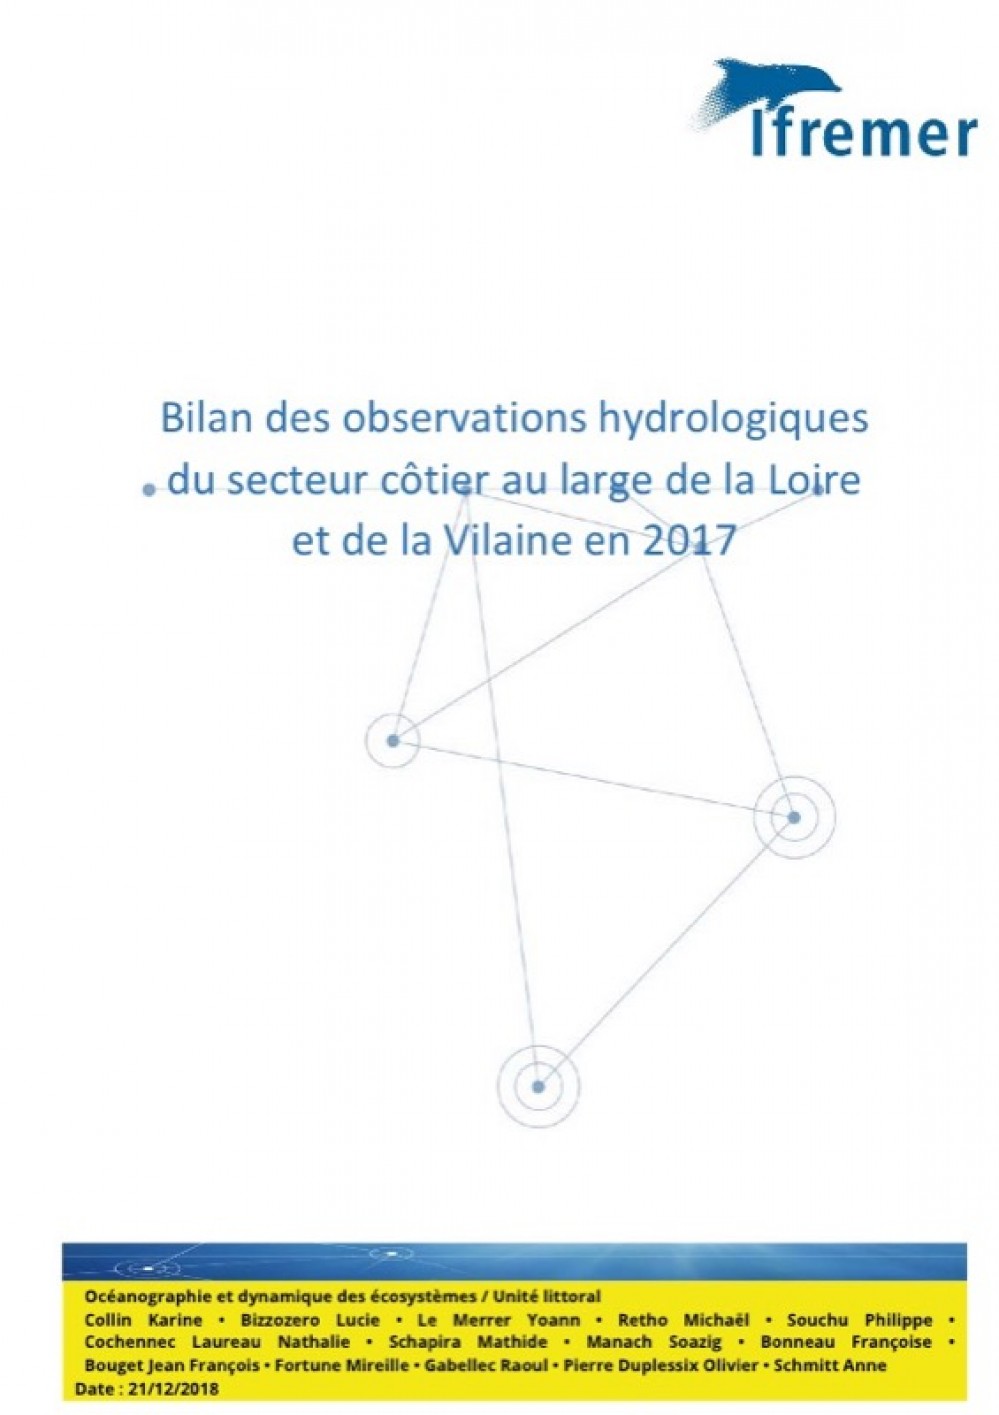 [Publication] Bilan des observations hydrologiques du secteur côtier au large de la Loire et de la Vilaine en 2017